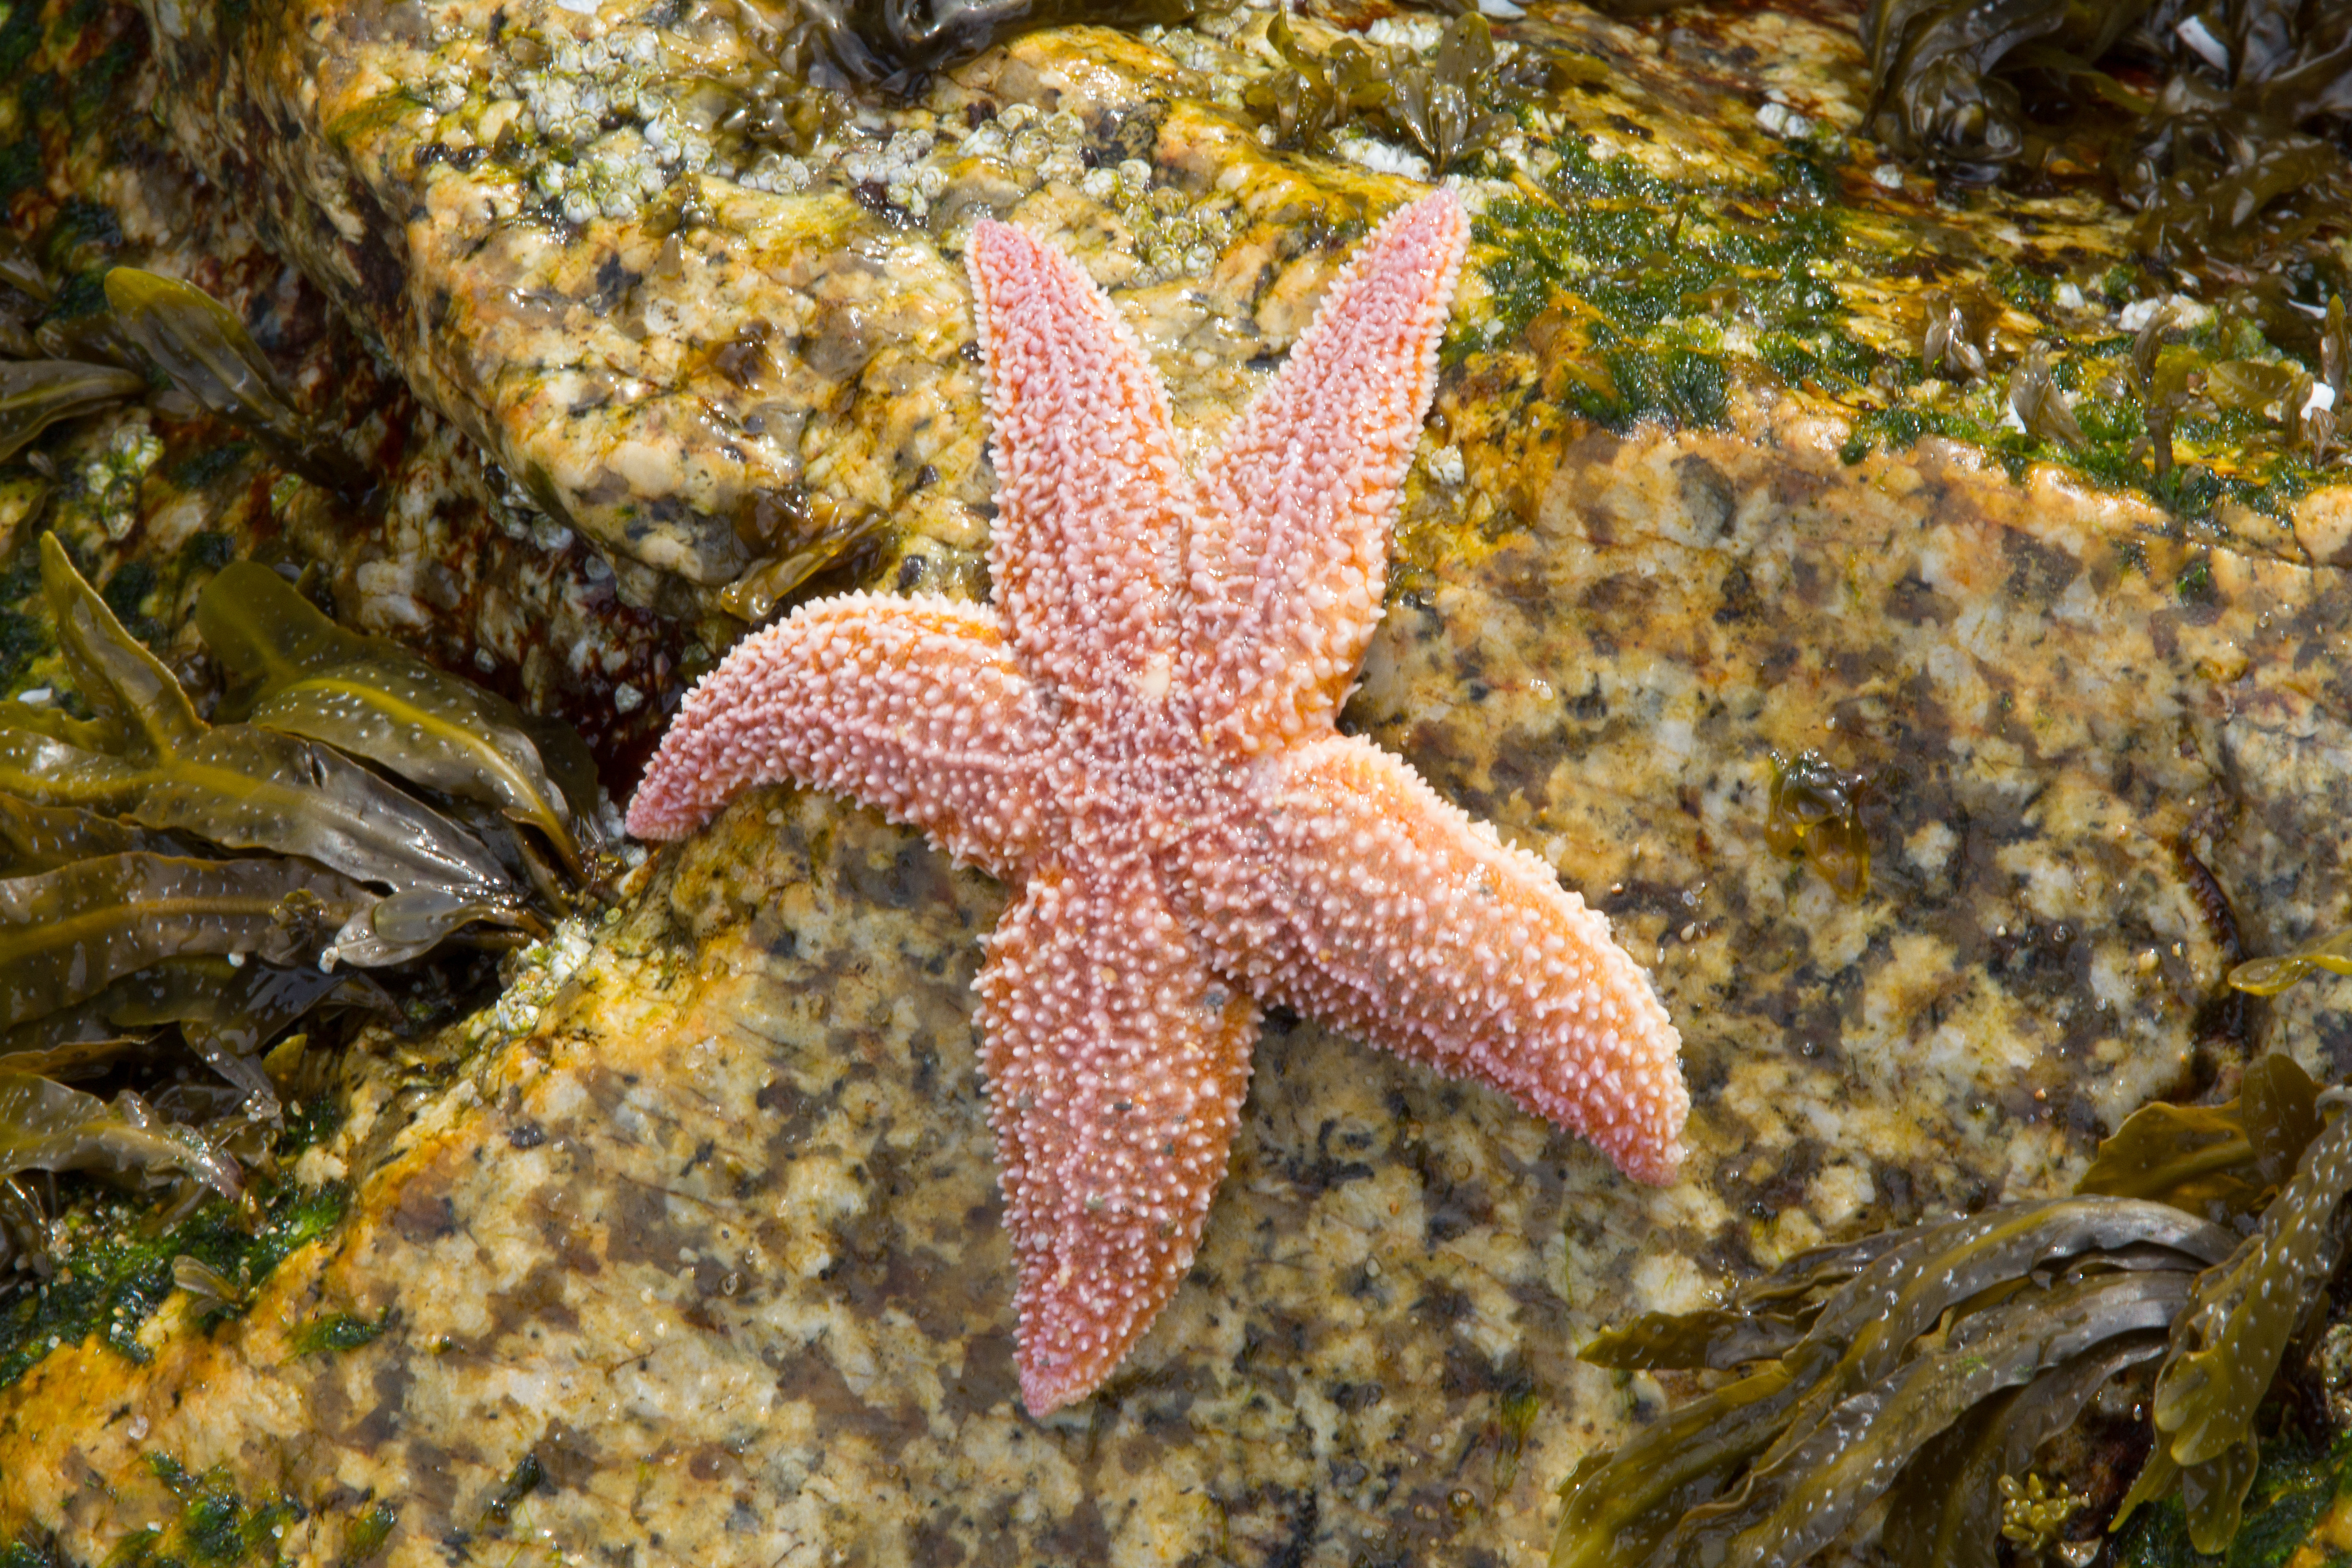 10584 Common Starfish